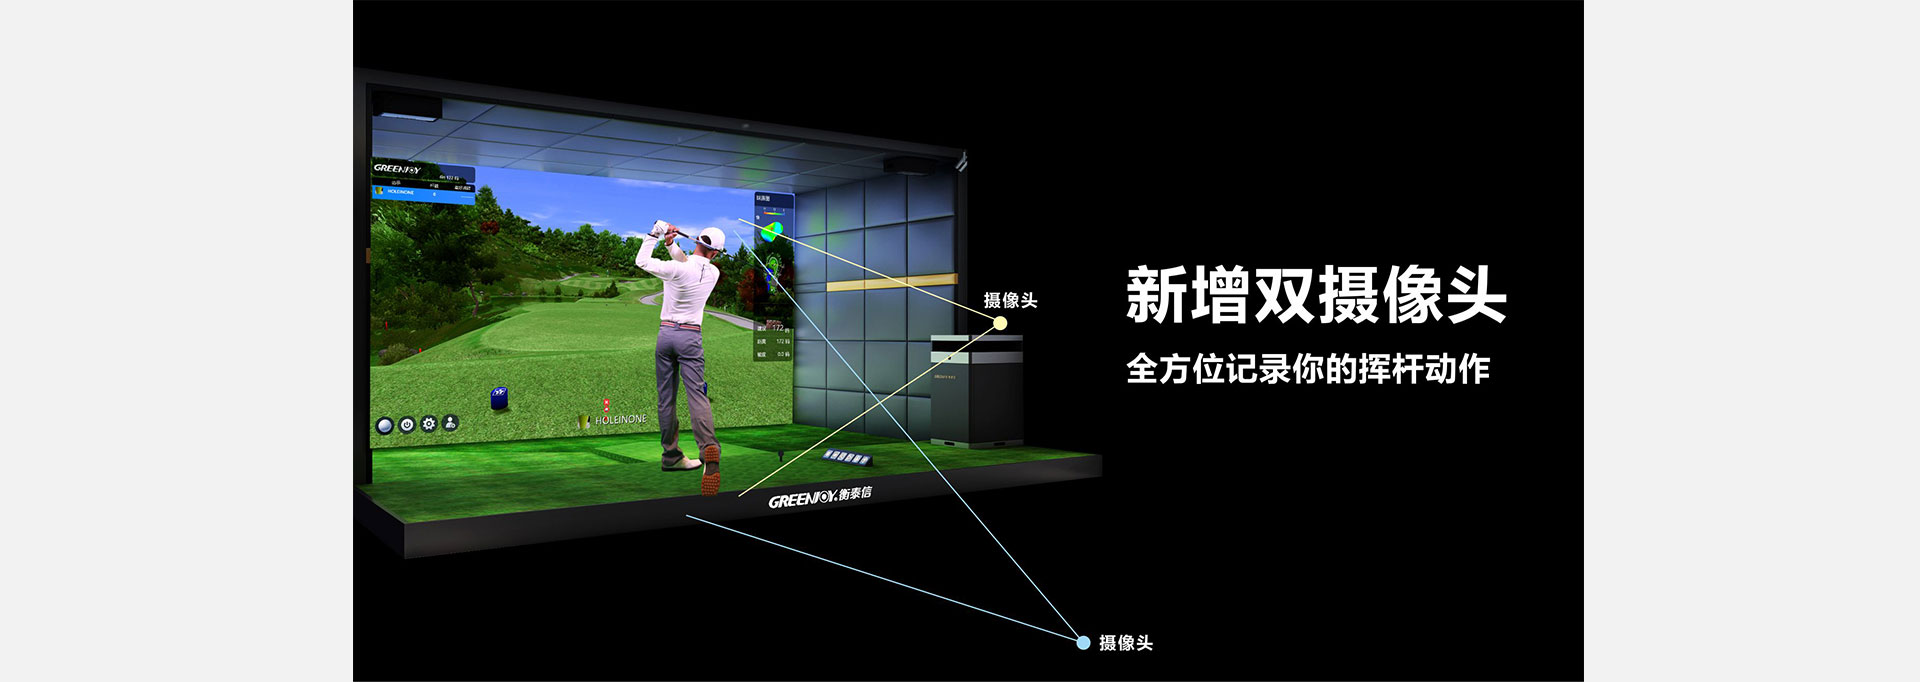 衡泰信高尔夫模拟器双摄像头示意图.jpg